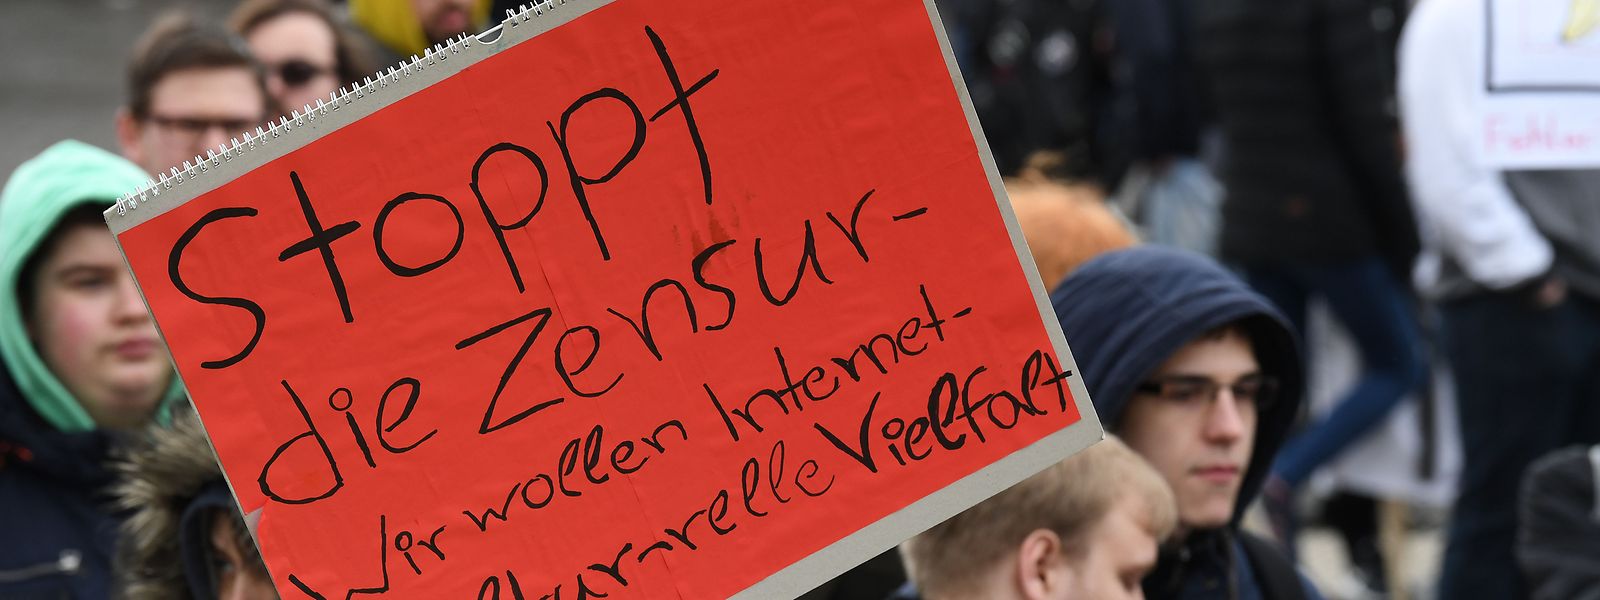 Demonstration "Rette Dein Internet" gegen Upload-Filter und die geplante EU-Urheberrechtsreform.